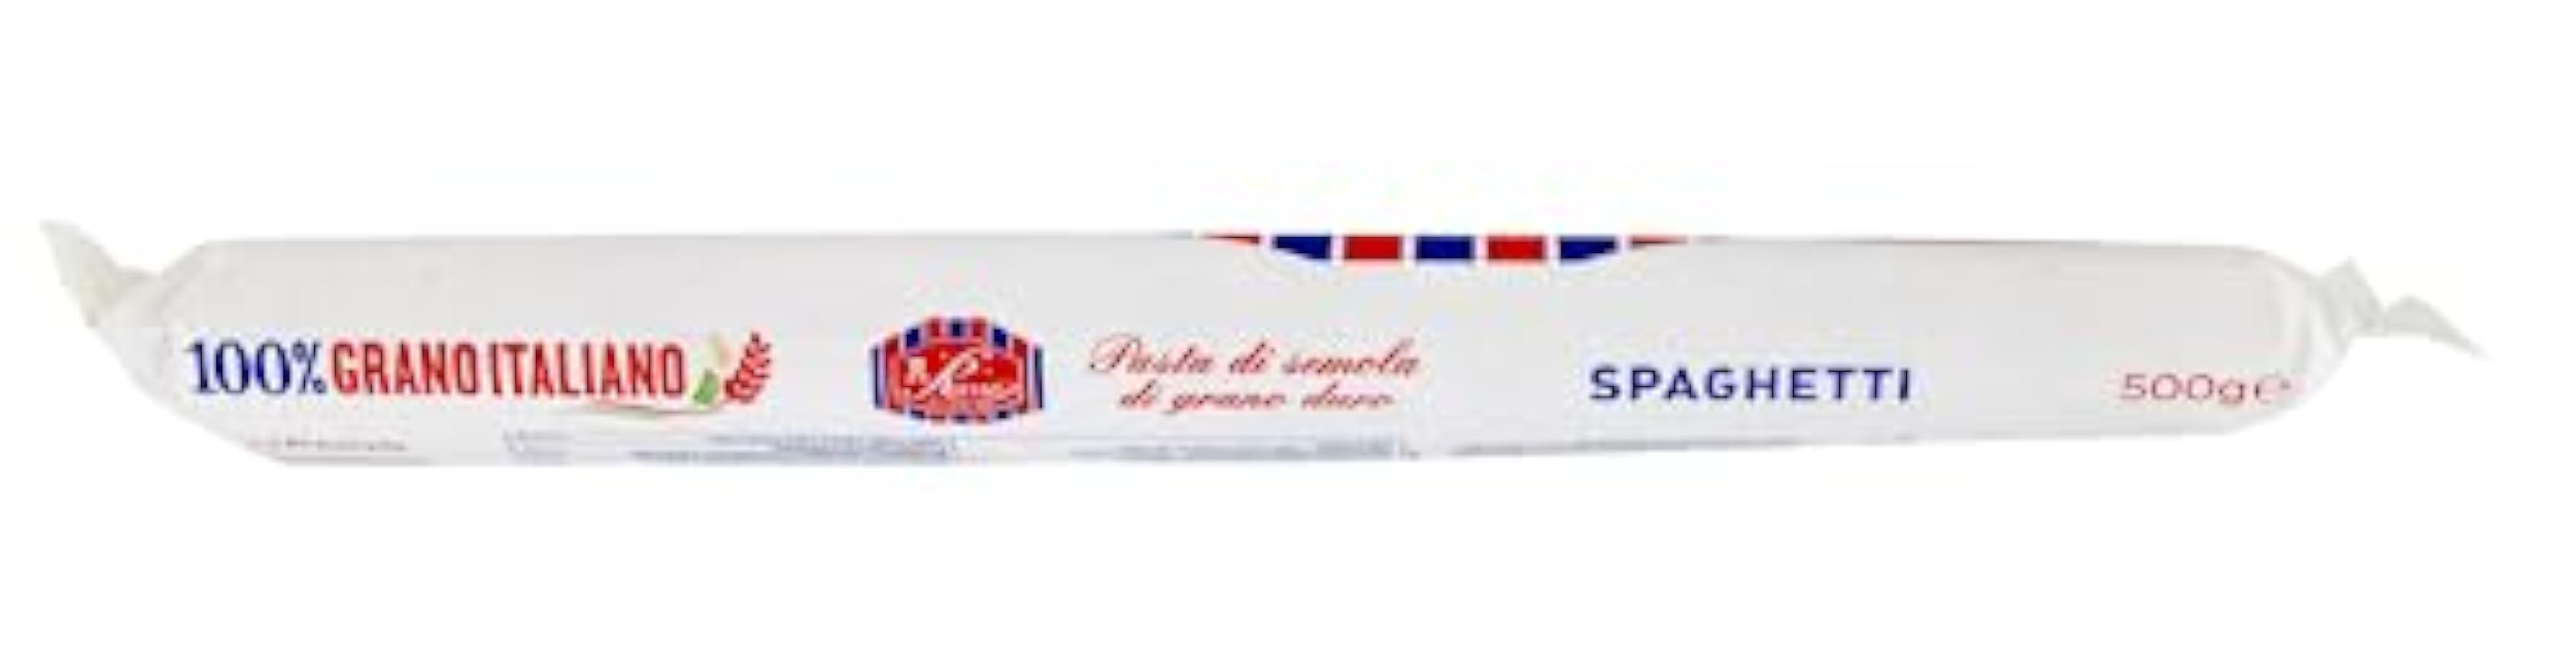 Russo Spaghetti N°72 Lot de 24 pâtes à la semoule de blé dur, 100 % blé italien, paquet de 500 g + boîte de 400 g My1q9dhb